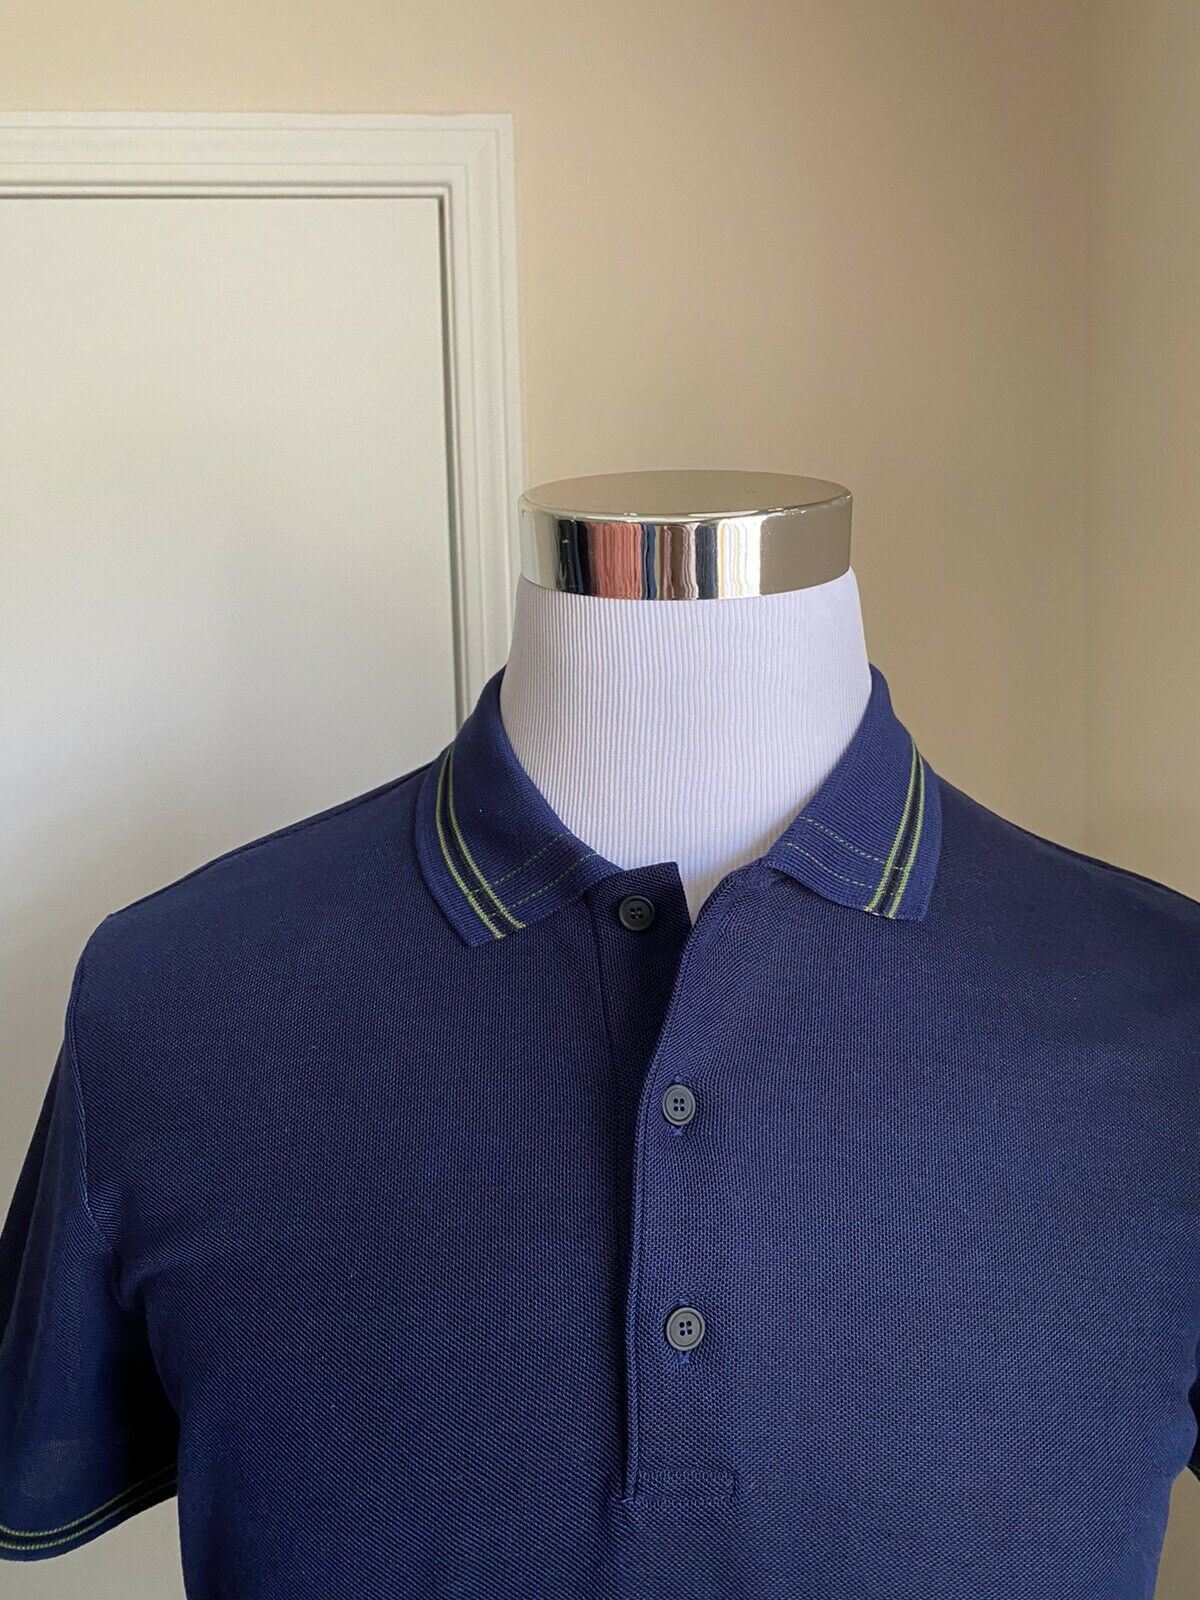 Мужская рубашка-поло Bottega Veneta, синяя, размер S, 390 долларов, США (46 евро), Италия